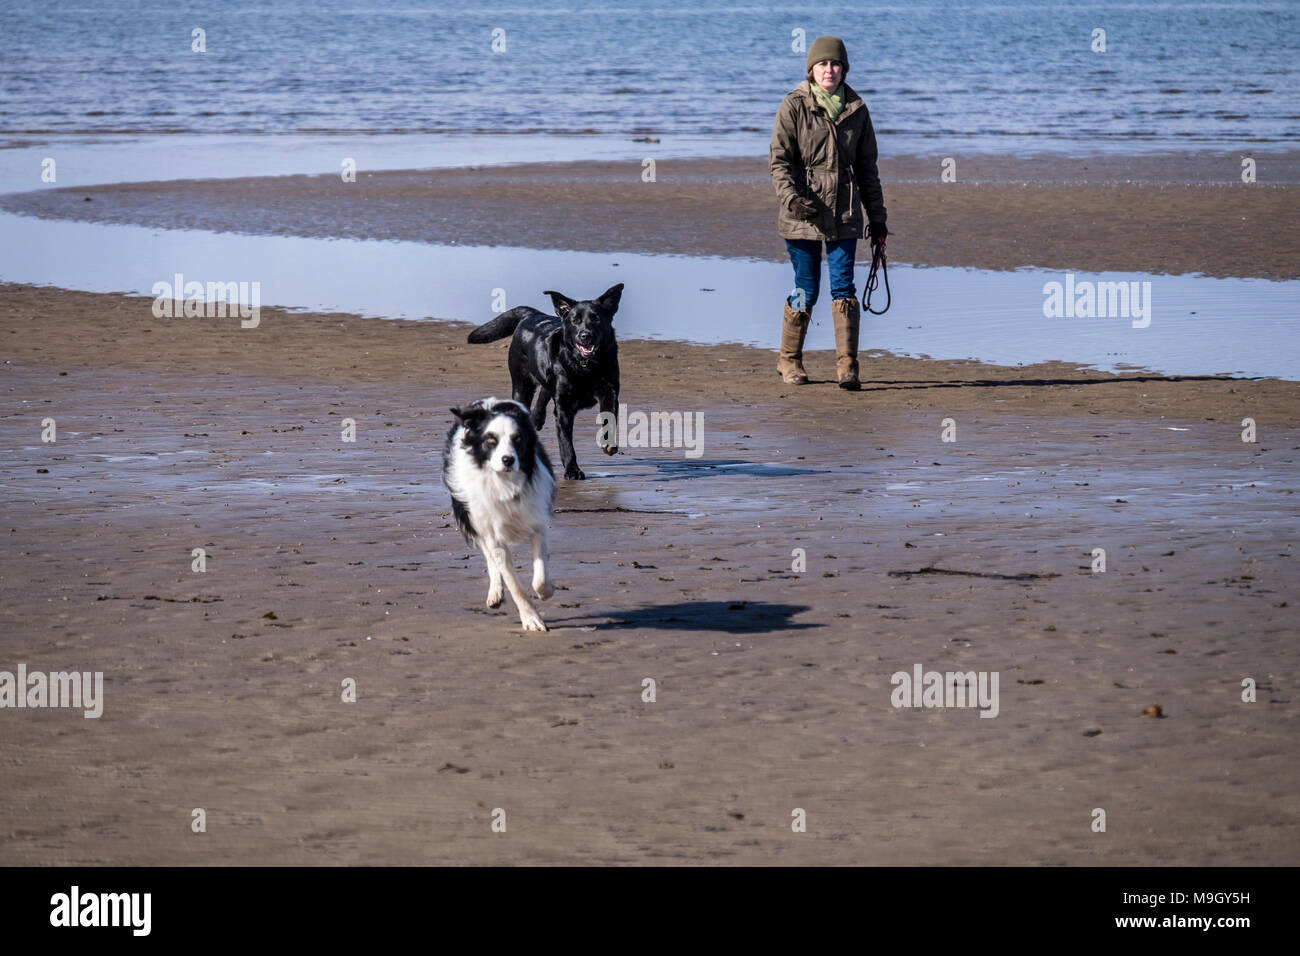 Promenade de chiens sur la plage comme les nuages en rouleau avec Arran en arrière-plan Banque D'Images